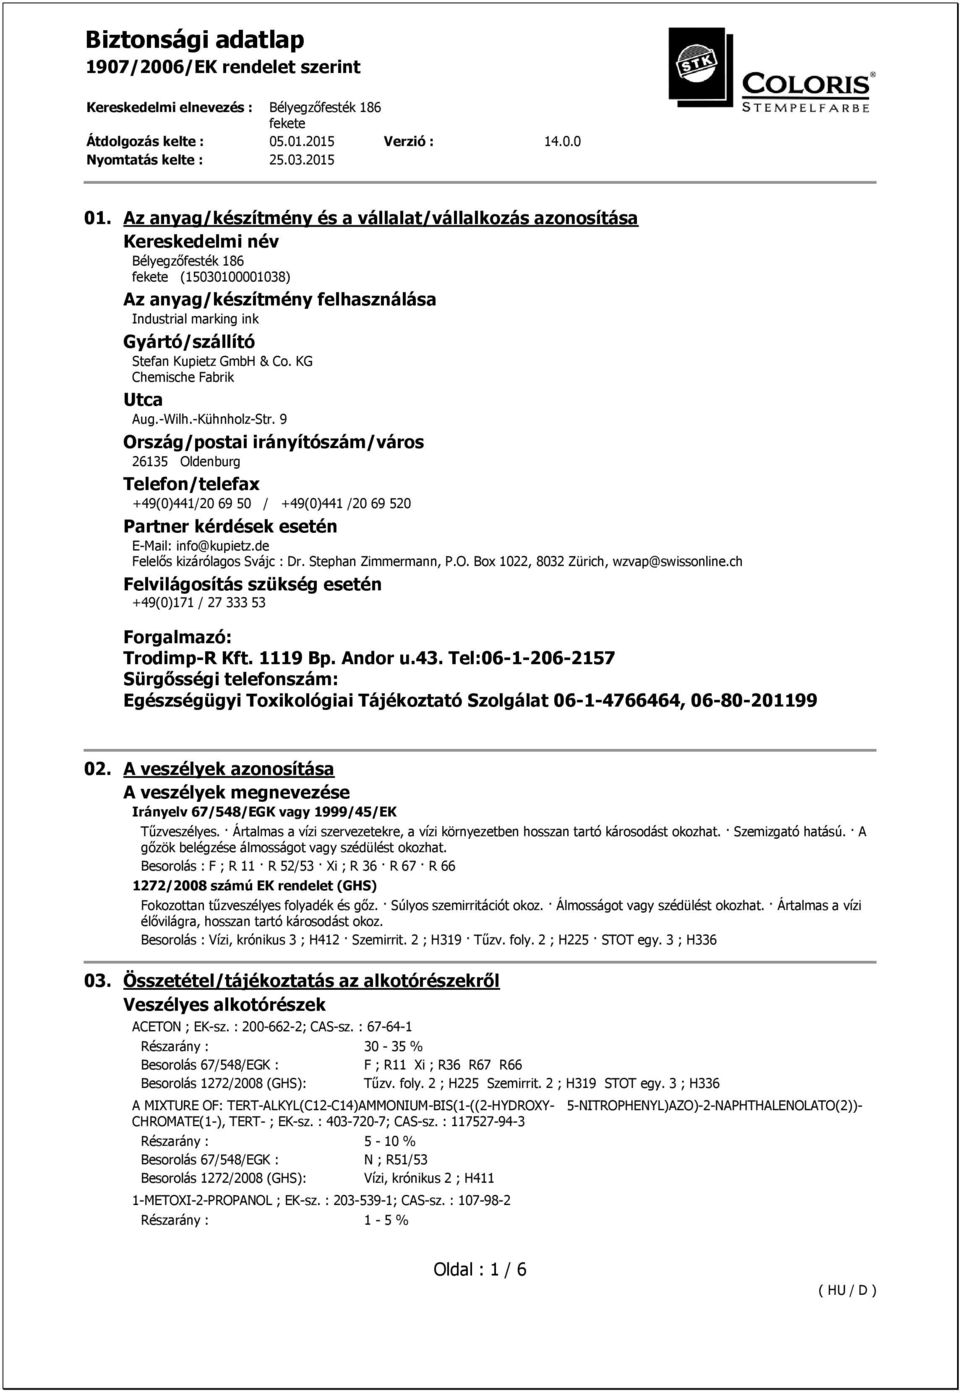 9 Ország/postai irányítószám/város 26135 Oldenburg Telefon/telefax +49(0)441/20 69 50 / +49(0)441 /20 69 520 Partner kérdések esetén E-Mail: info@kupietz.de Felelős kizárólagos Svájc : Dr.